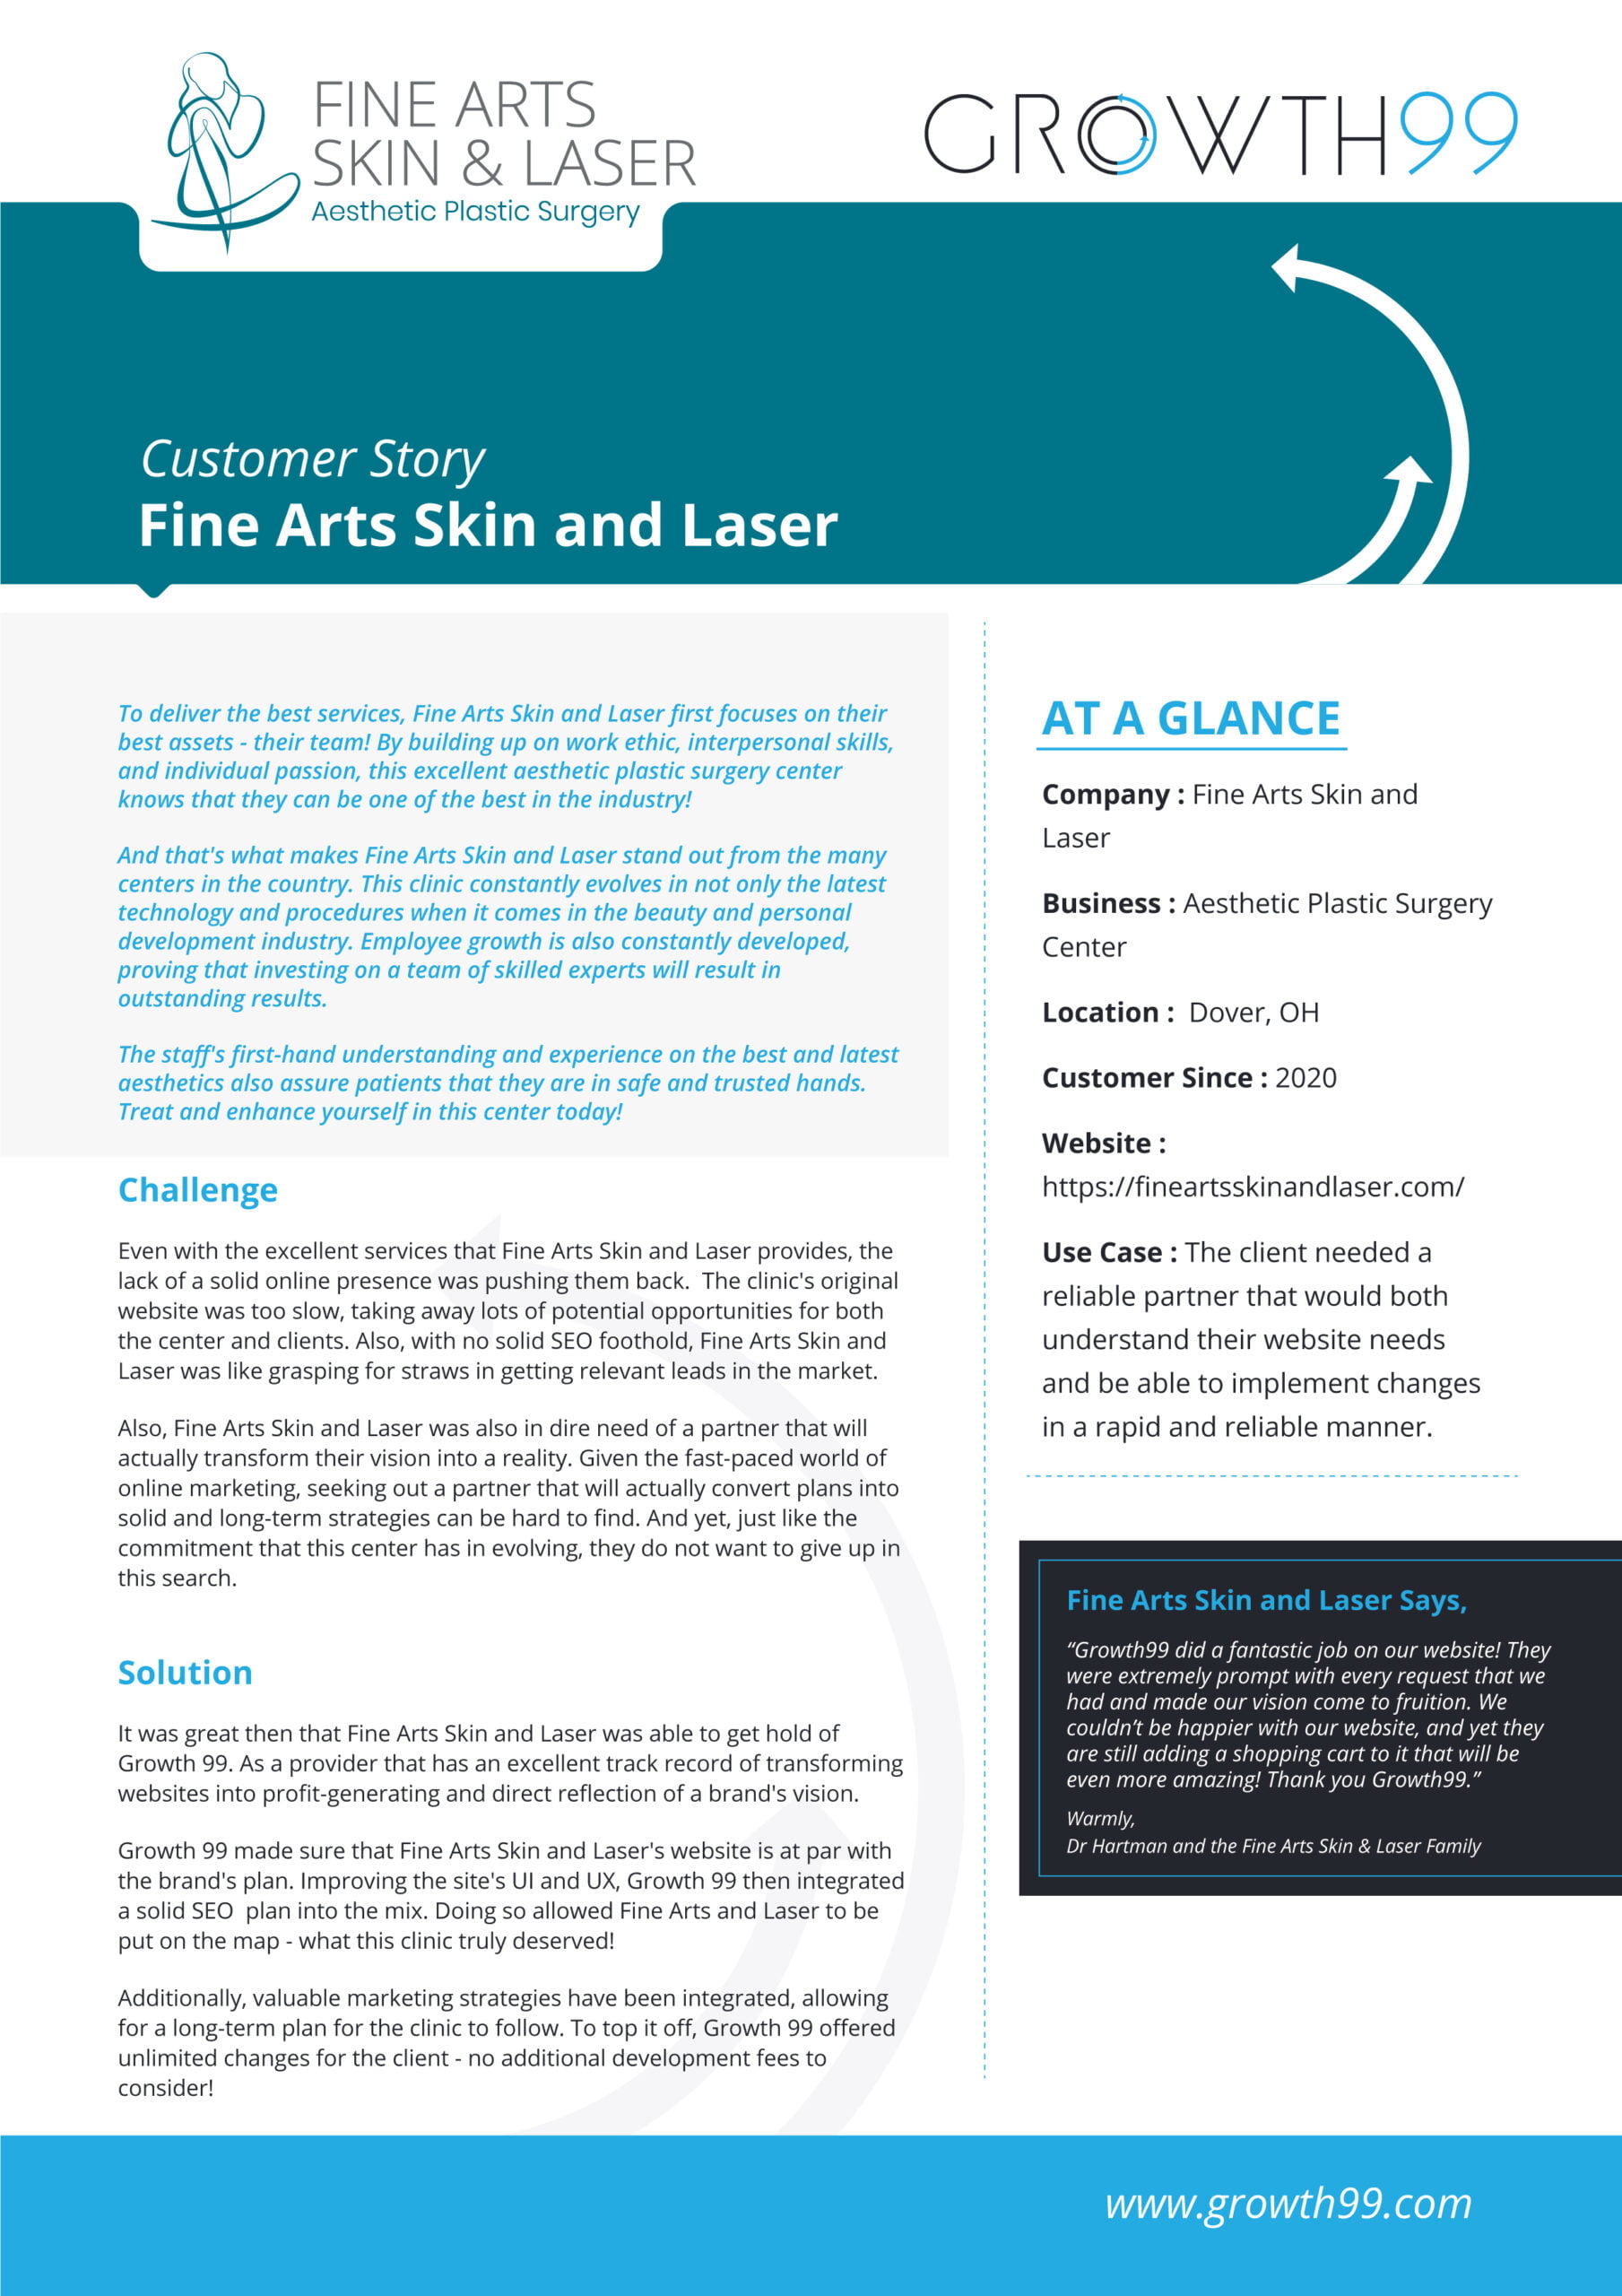 Fine Arts Skin & Laser Case Study